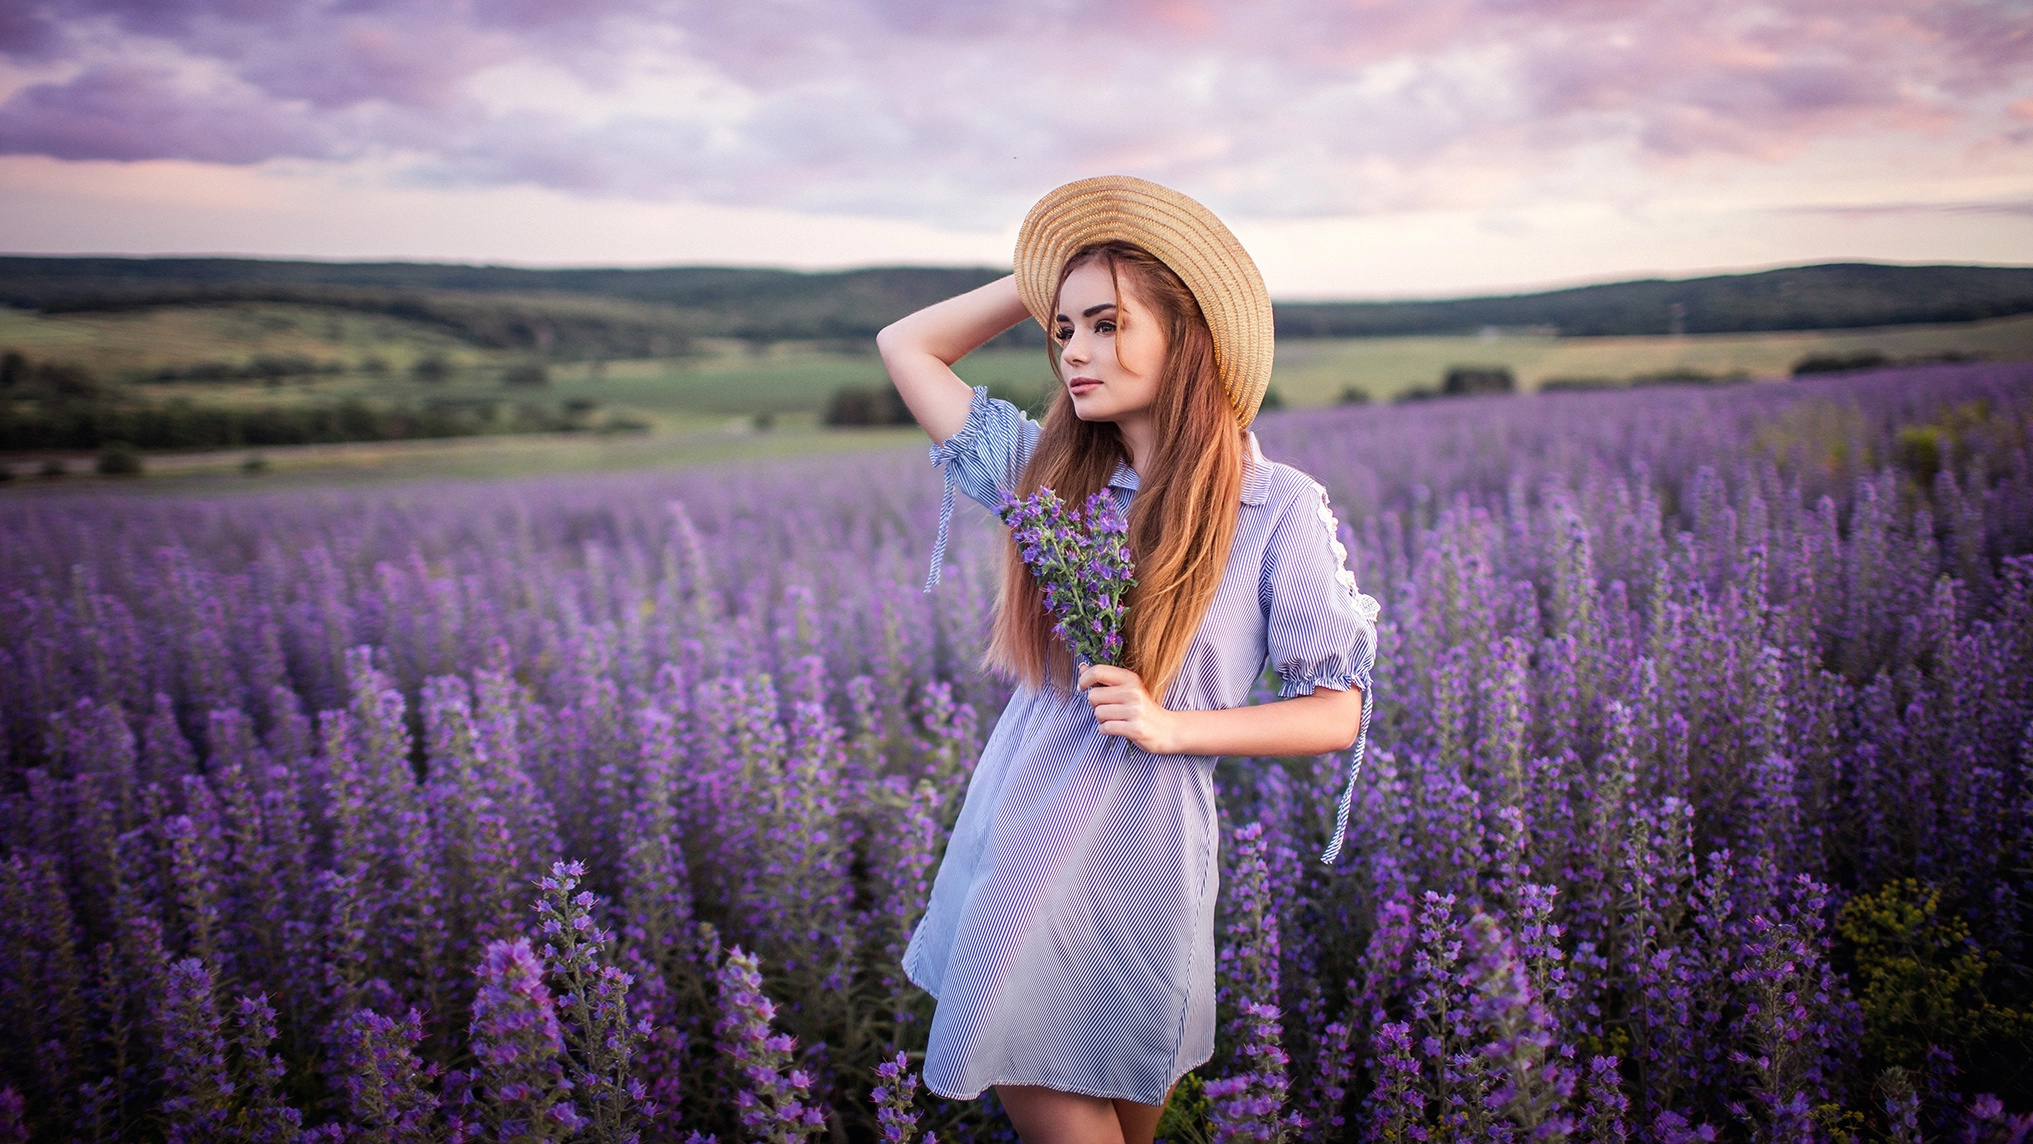 Flowers Purple Flowers Plants Landscape Hat Women Outdoors Long Hair Women Model Sergey Shatskov 2033x1144